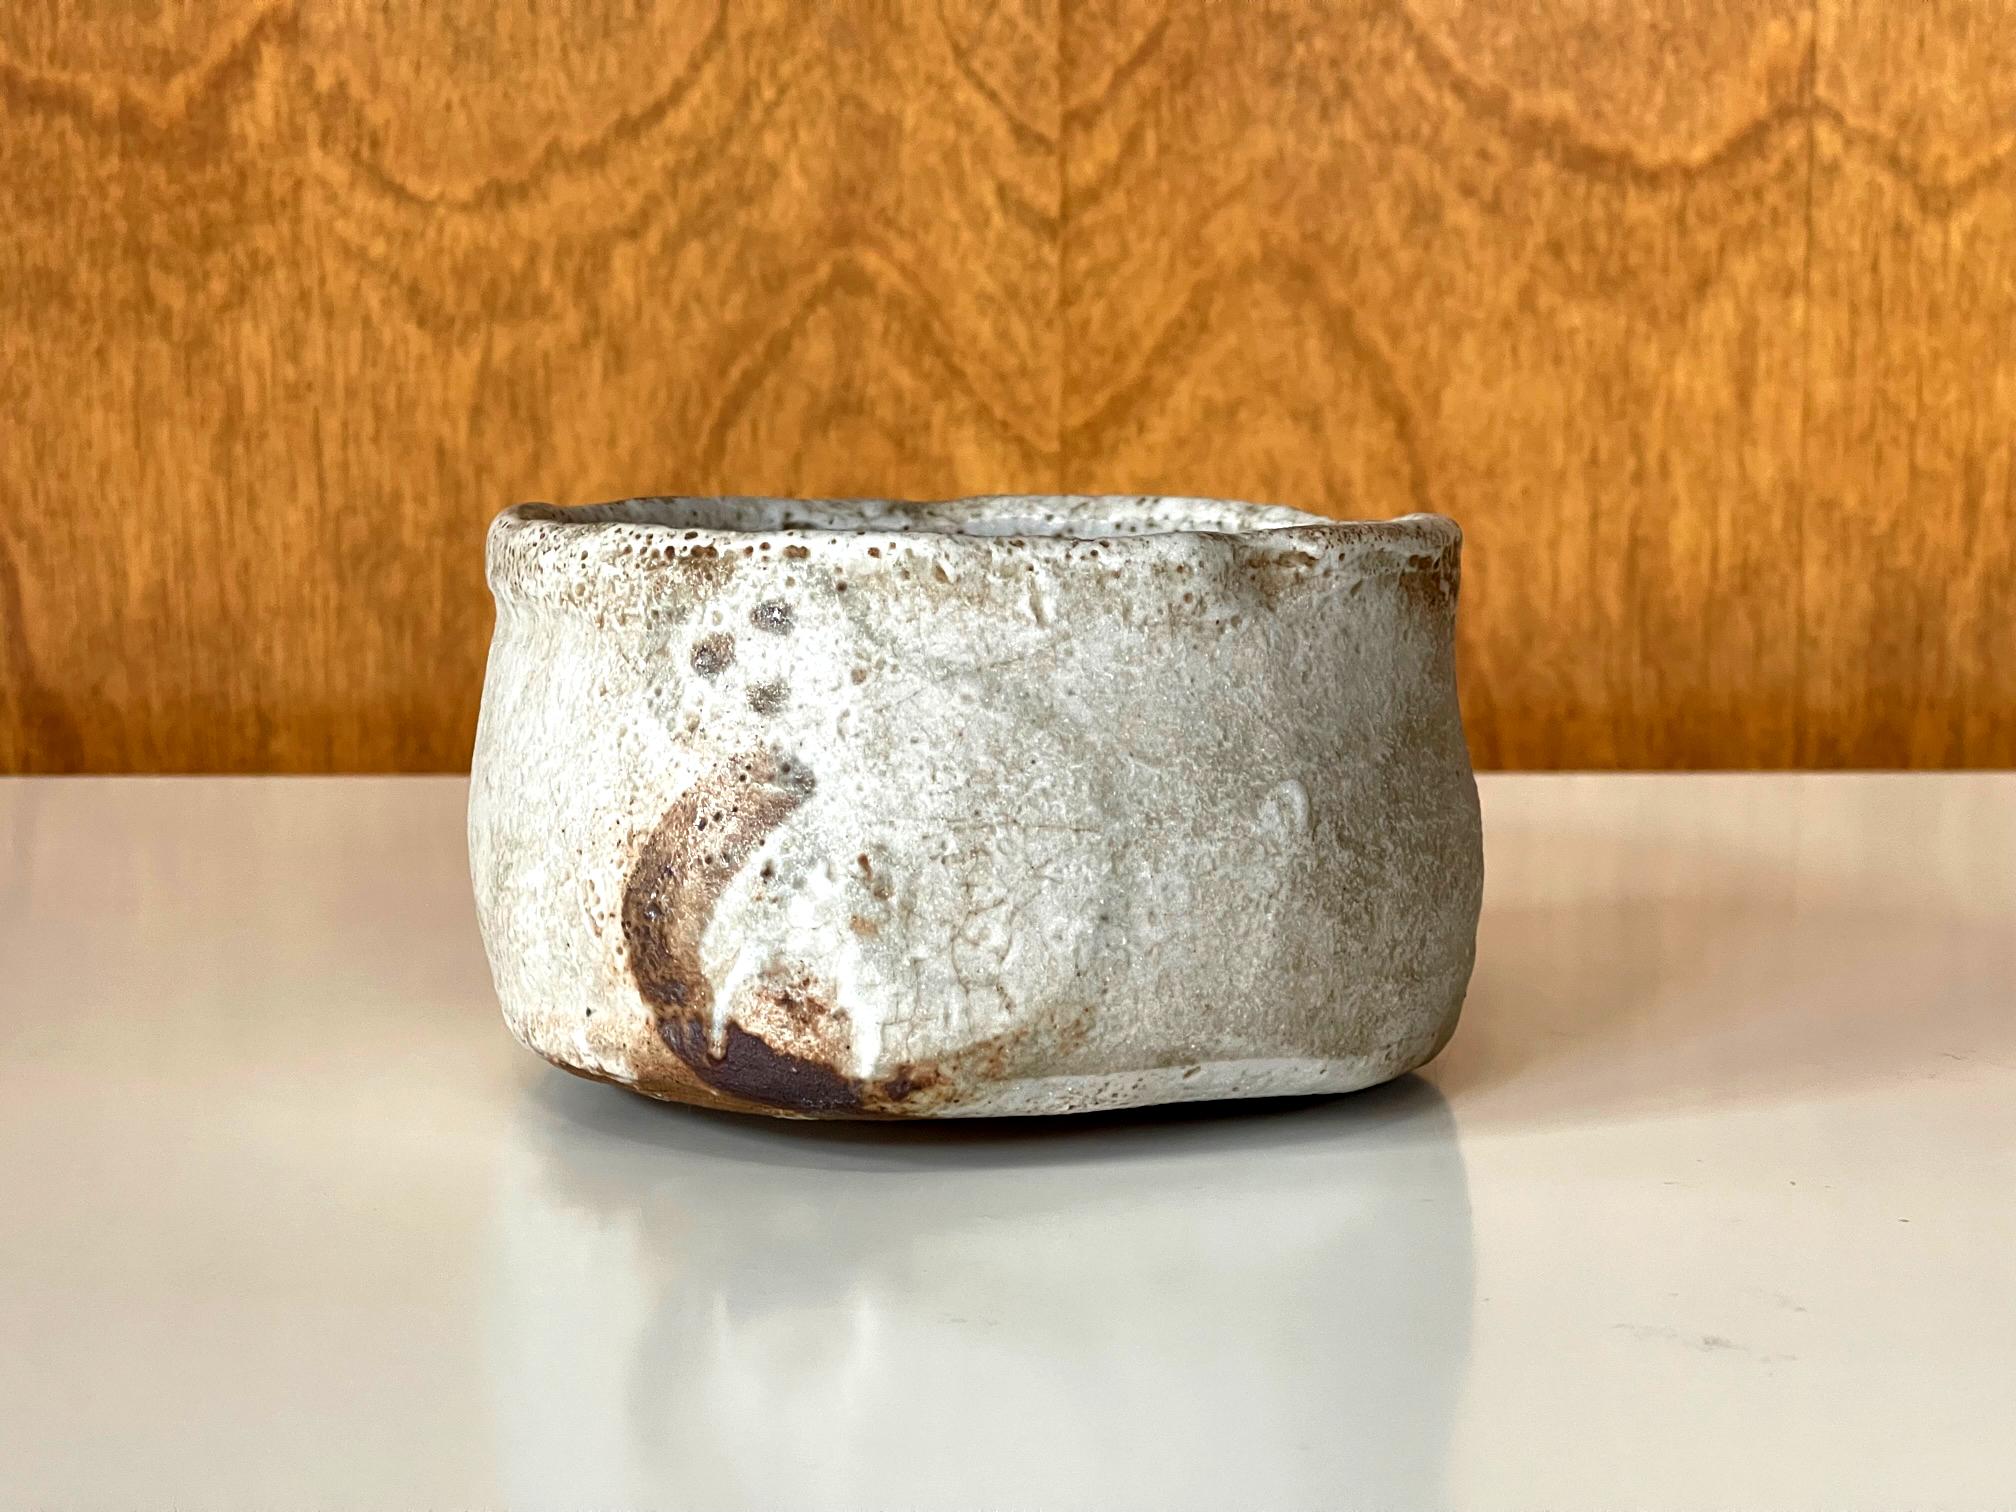 Nous vous proposons un bol à thé japonais en céramique (chawan) utilisé lors de la cérémonie traditionnelle du chado. La coupe a été empotée en forme de sabot avec un pied annulaire rasé extrêmement bas. Sa taille et ses proportions harmonieuses